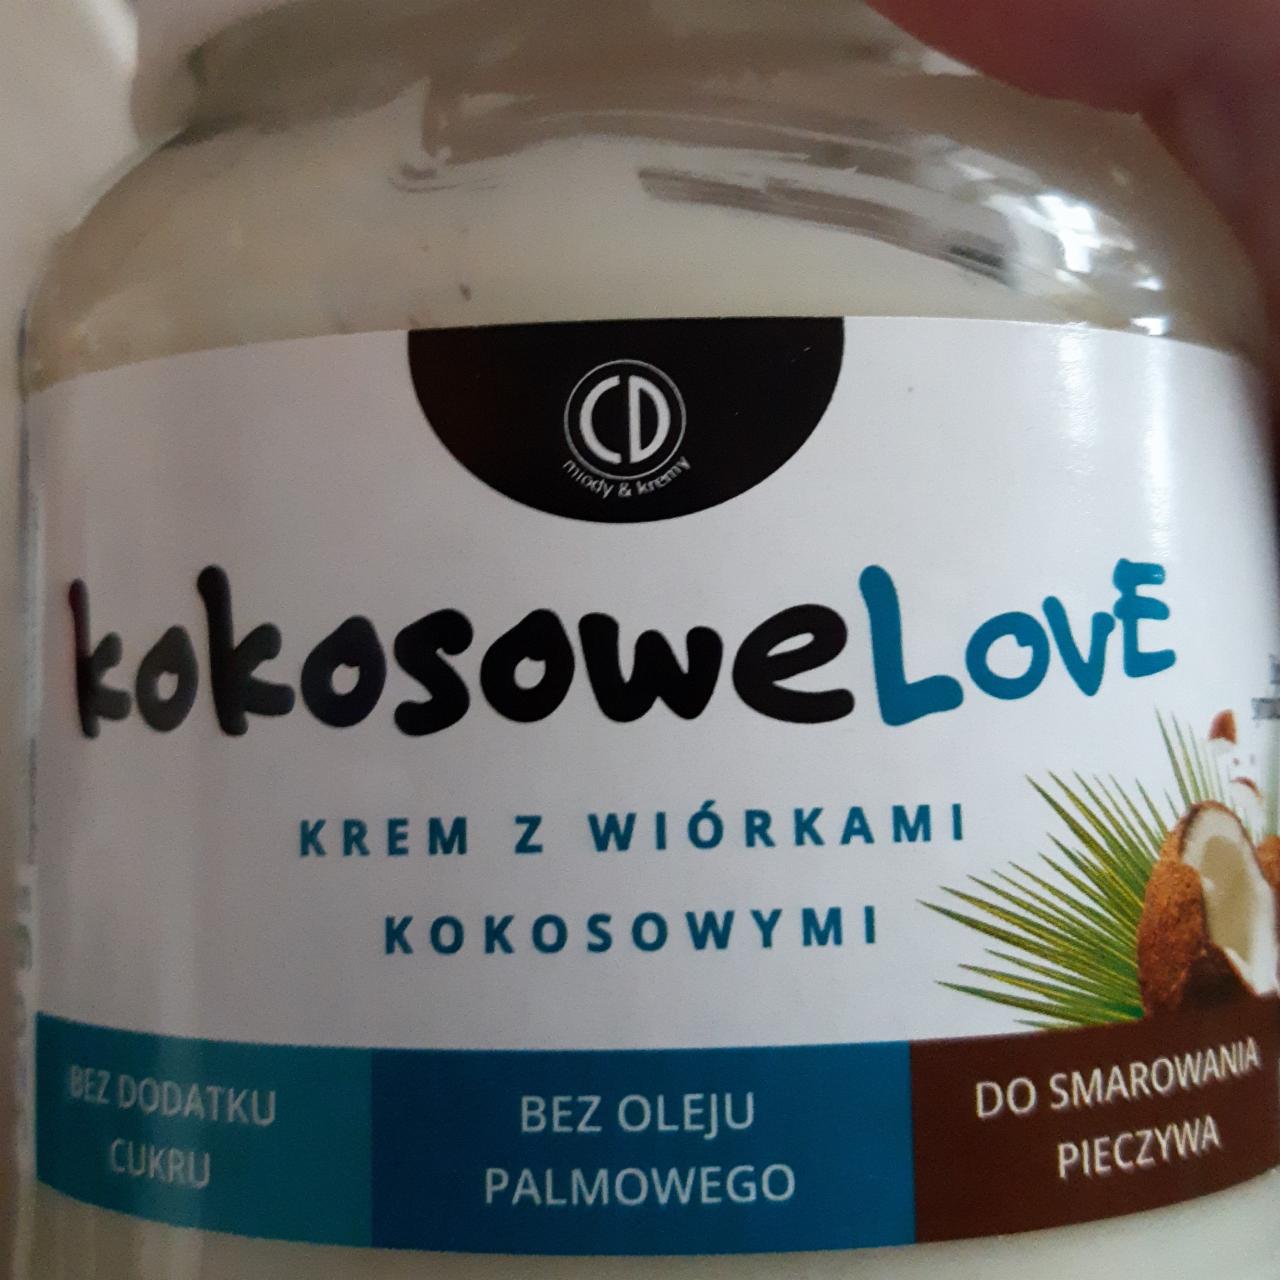 Zdjęcia - Krem z wiórkami kokosowymi Kokosowe Love CD